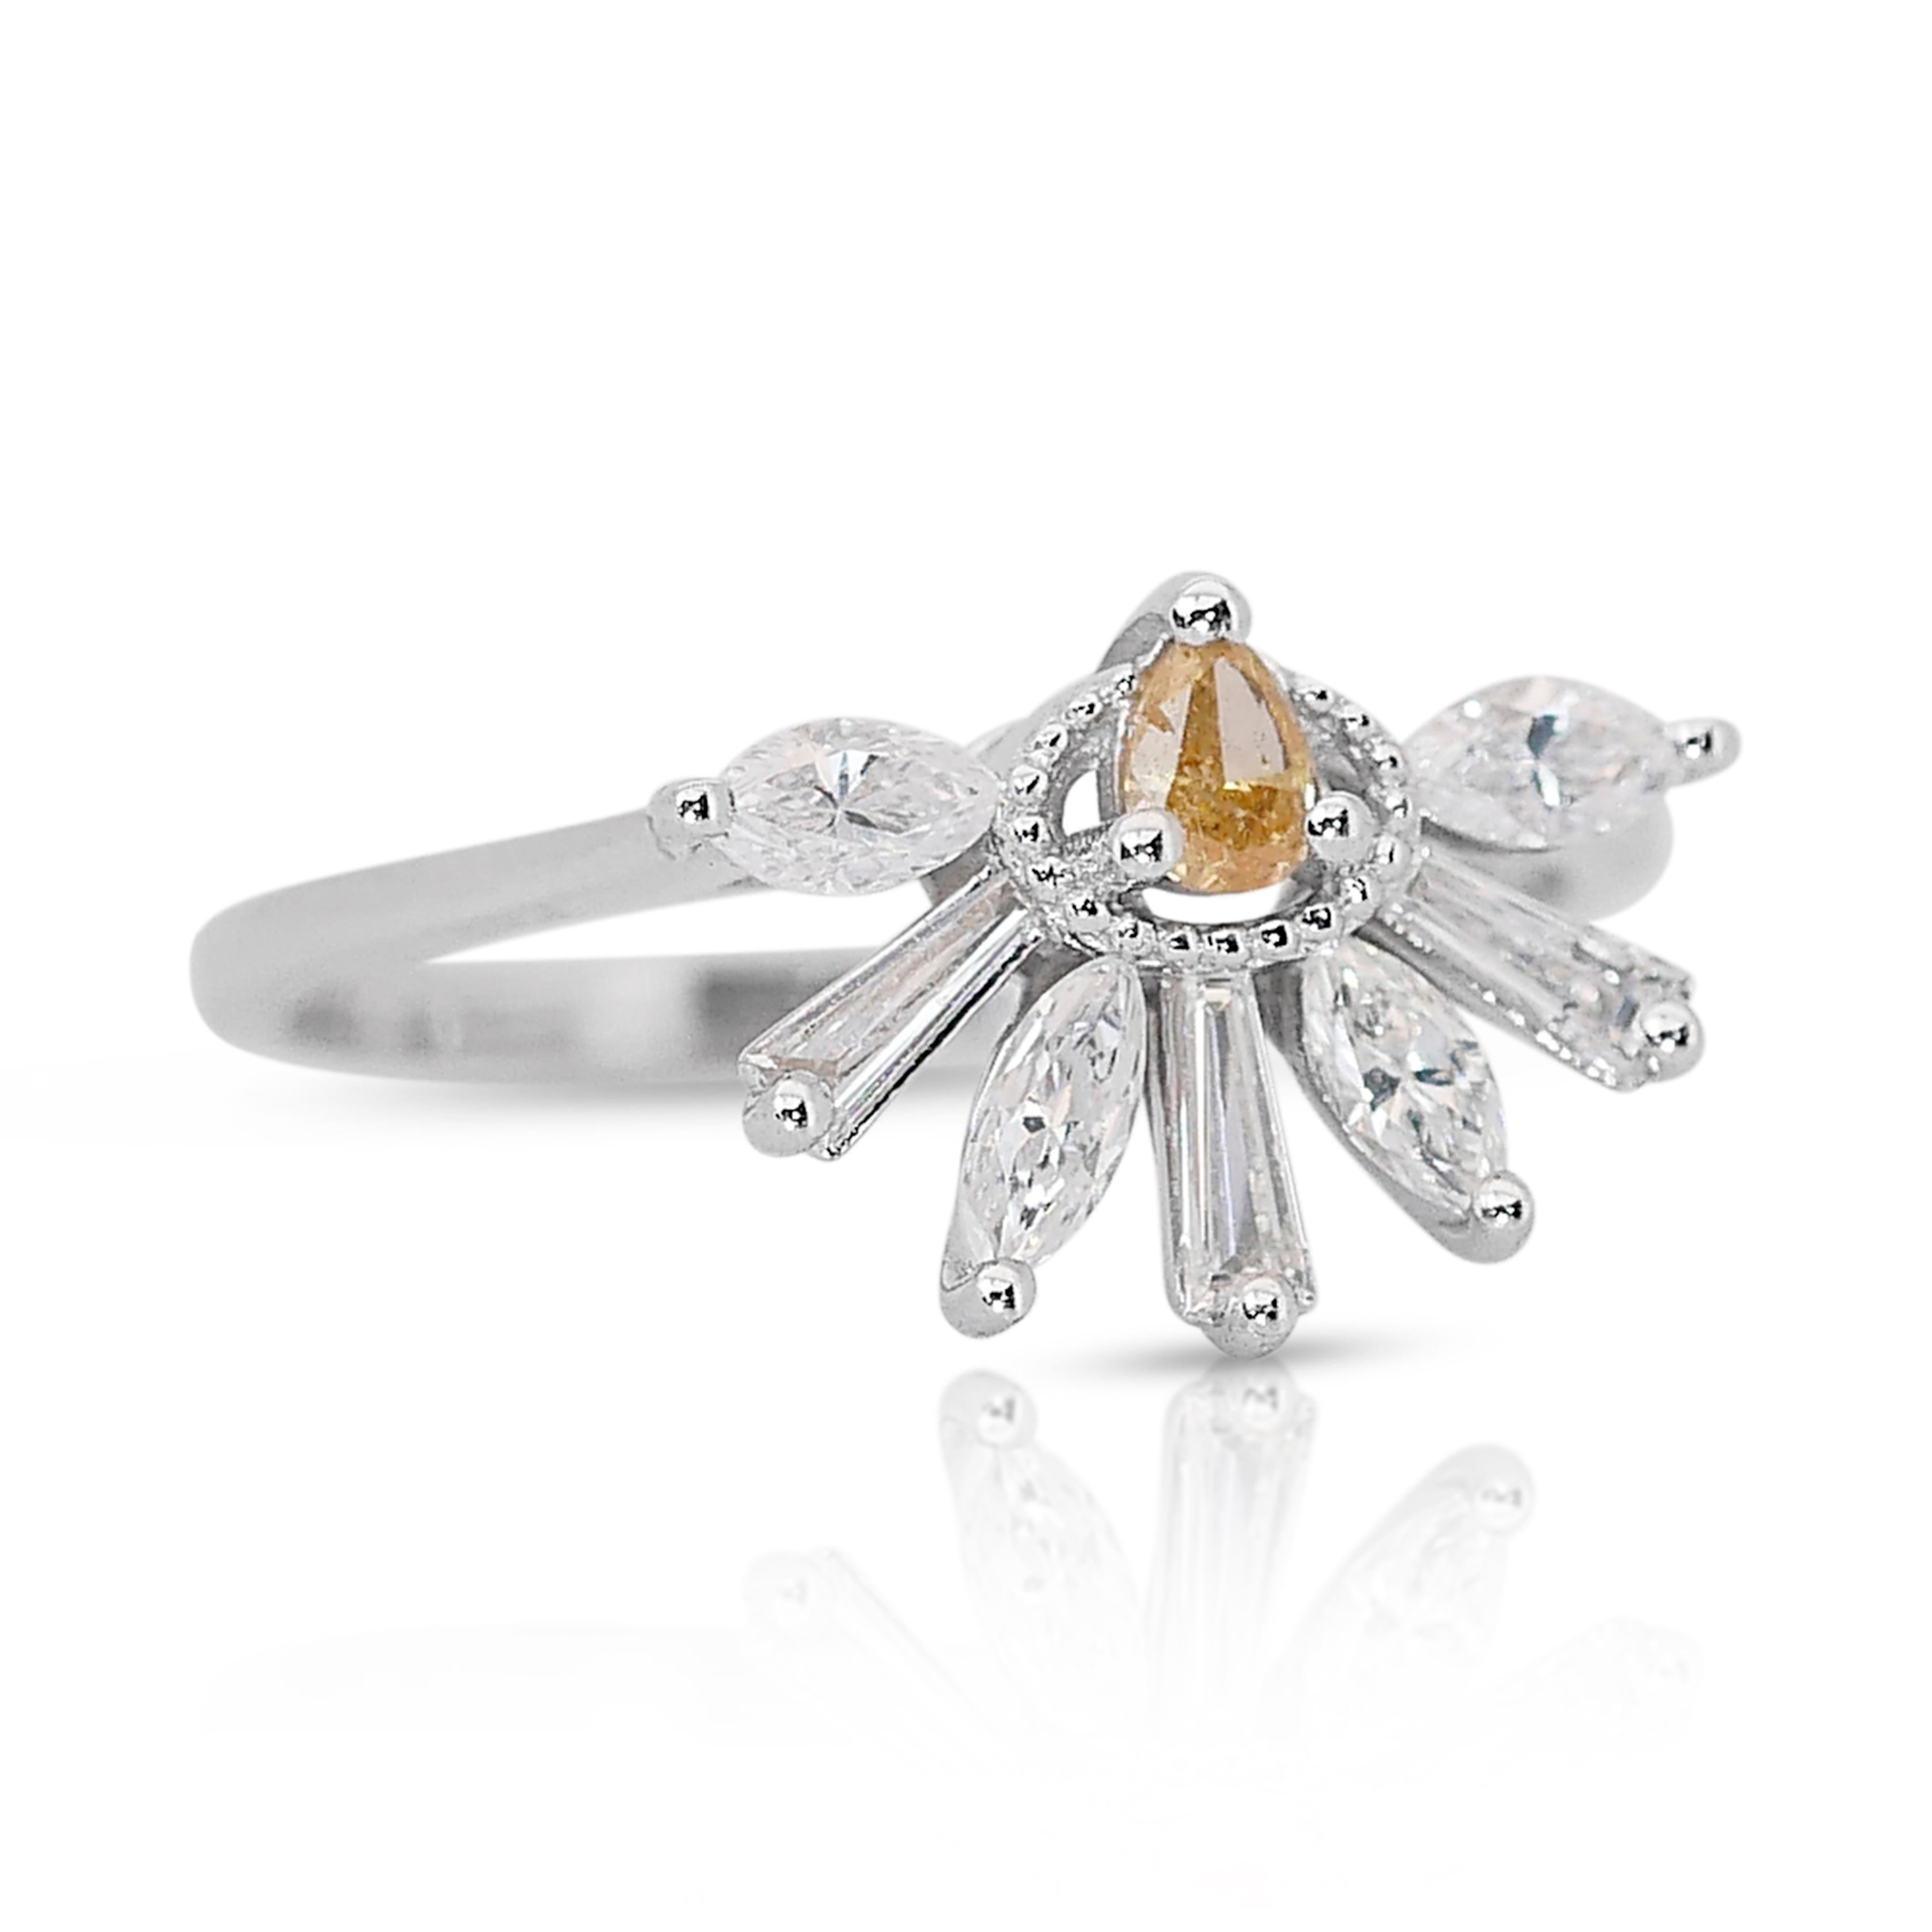 Einzigartiger und einzigartiger Ring im Art-Deco-Stil mit  0,77 ct Diamanten Fancy-Colored Ring in 18k Weißgold - IGI zertifiziert

Dieser exquisite Ring aus 18 Karat Weißgold ist mit einem leuchtenden, birnenförmigen Diamanten von 0,10 Karat